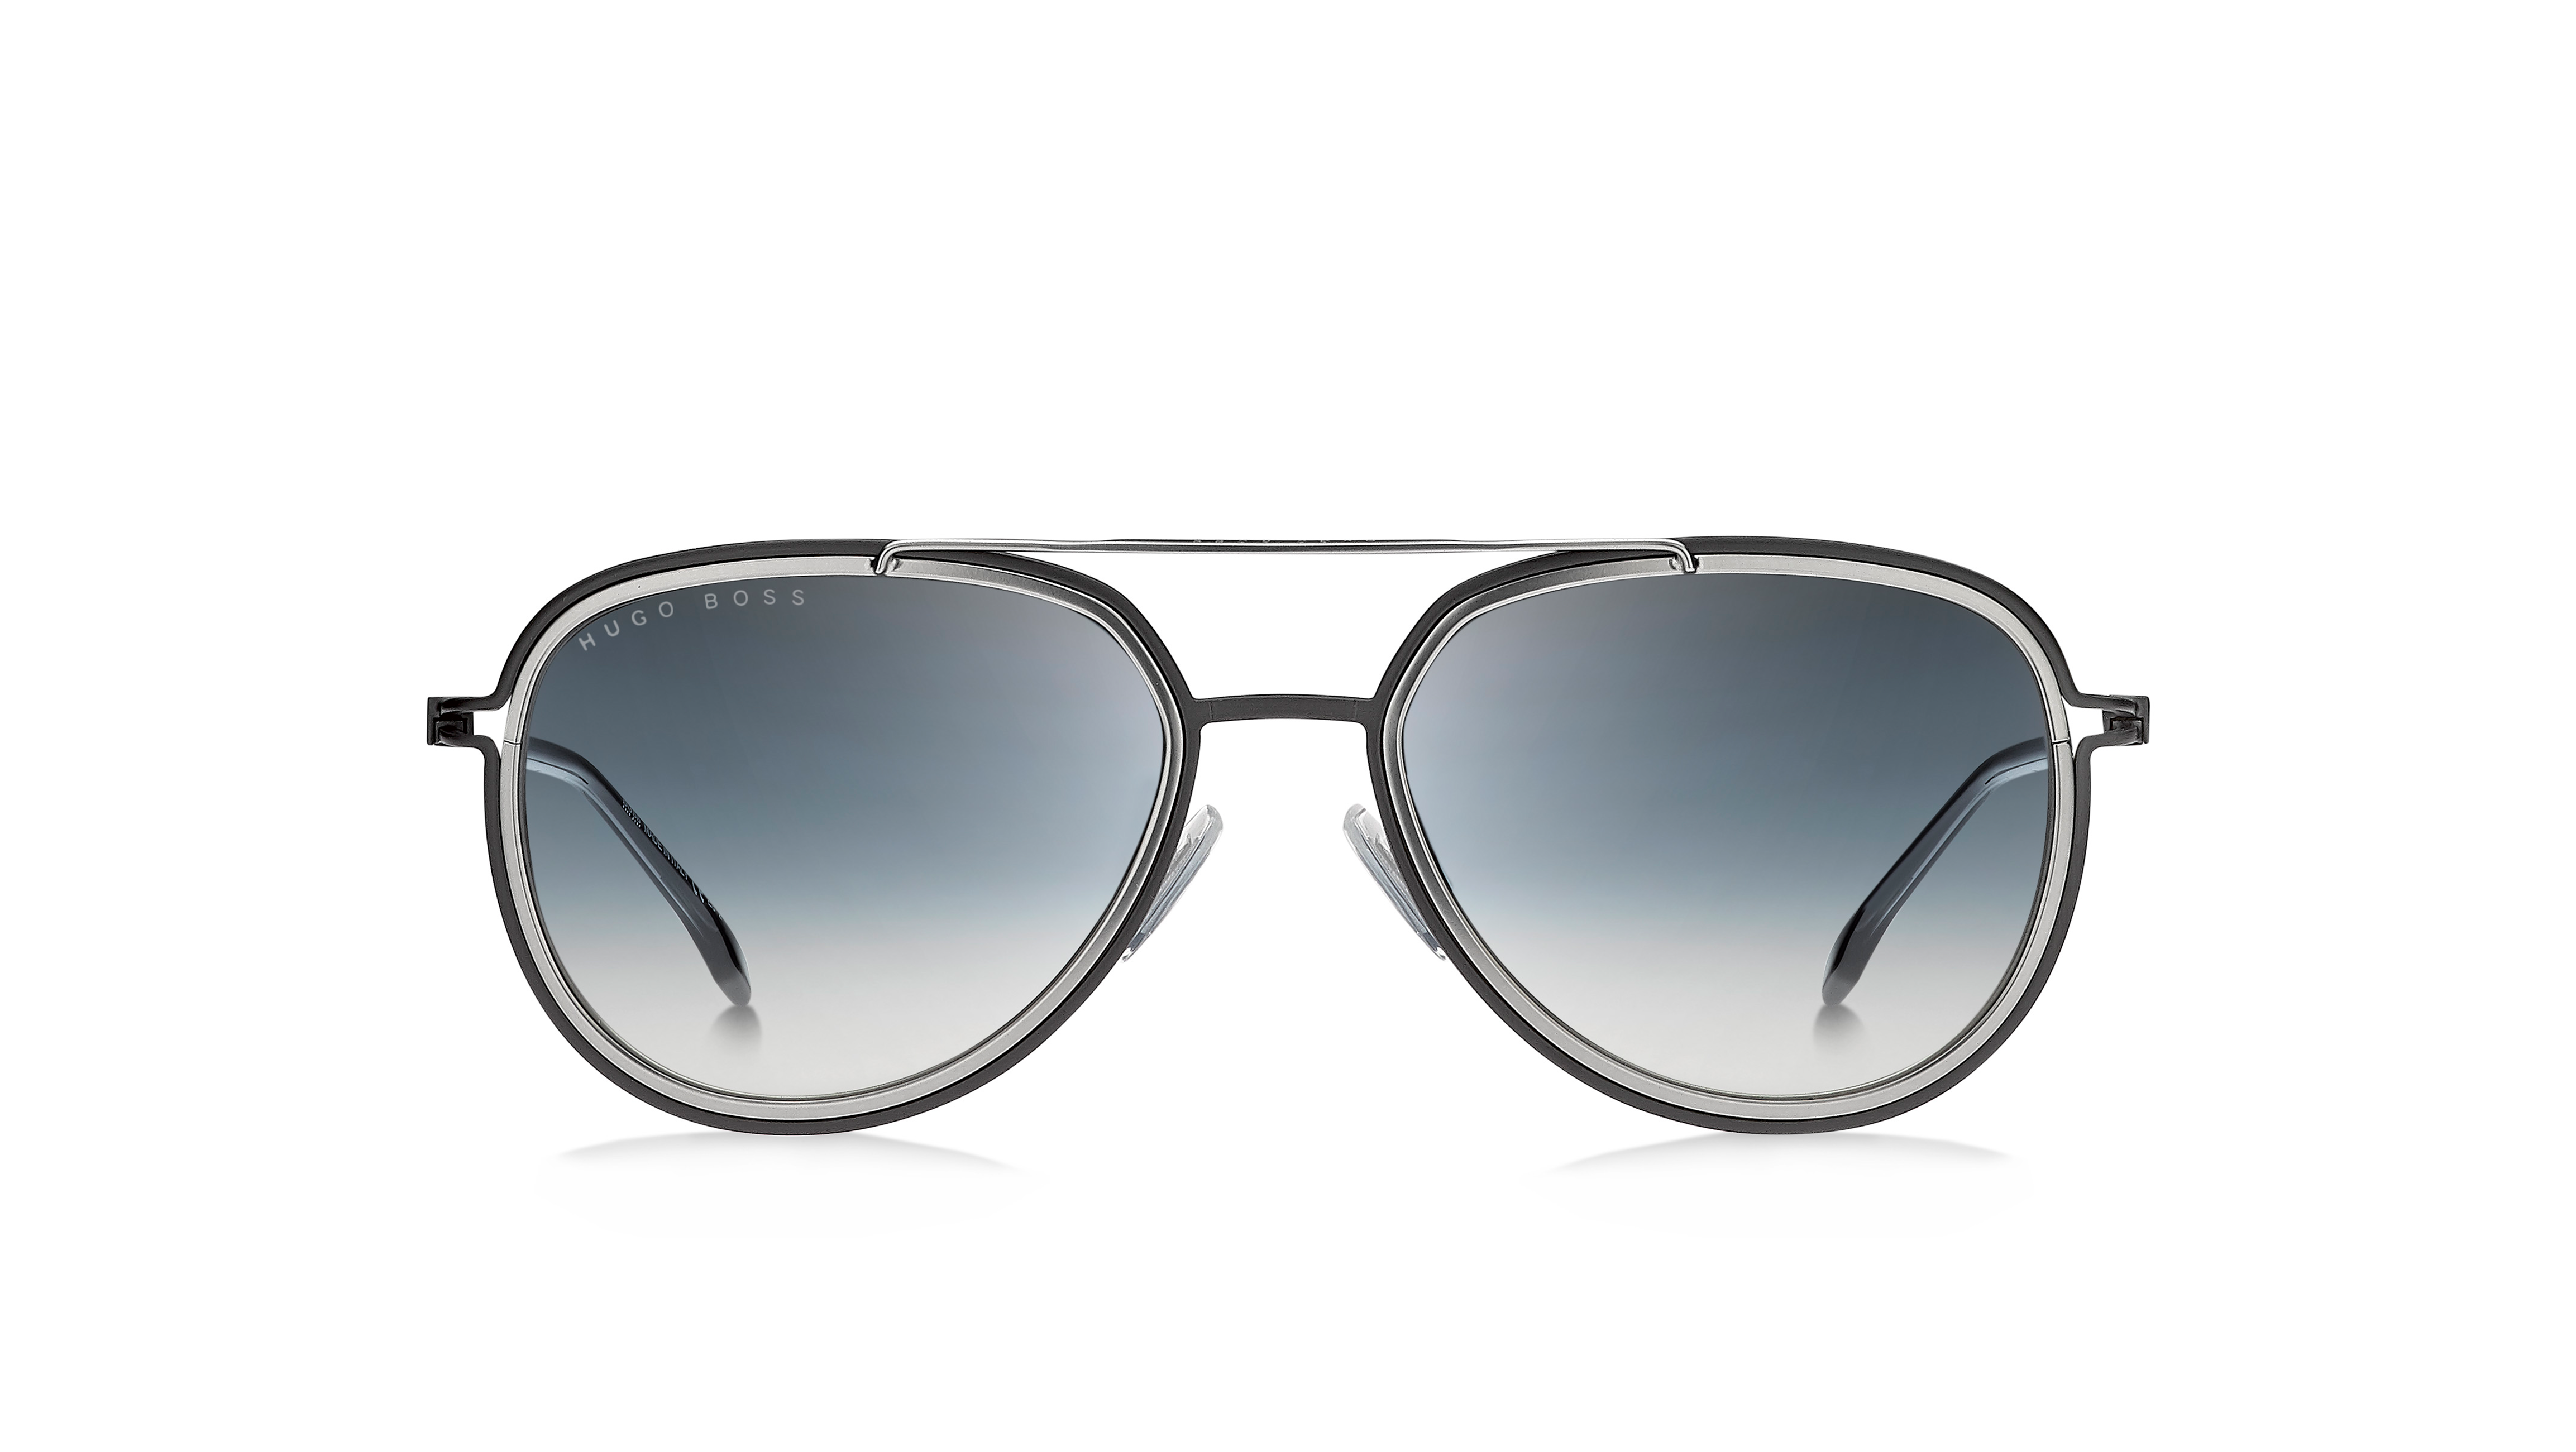 Hugo Boss SpringSummer Eye wear 2014 | Best mens sunglasses, Mens sunglasses,  Trending sunglasses